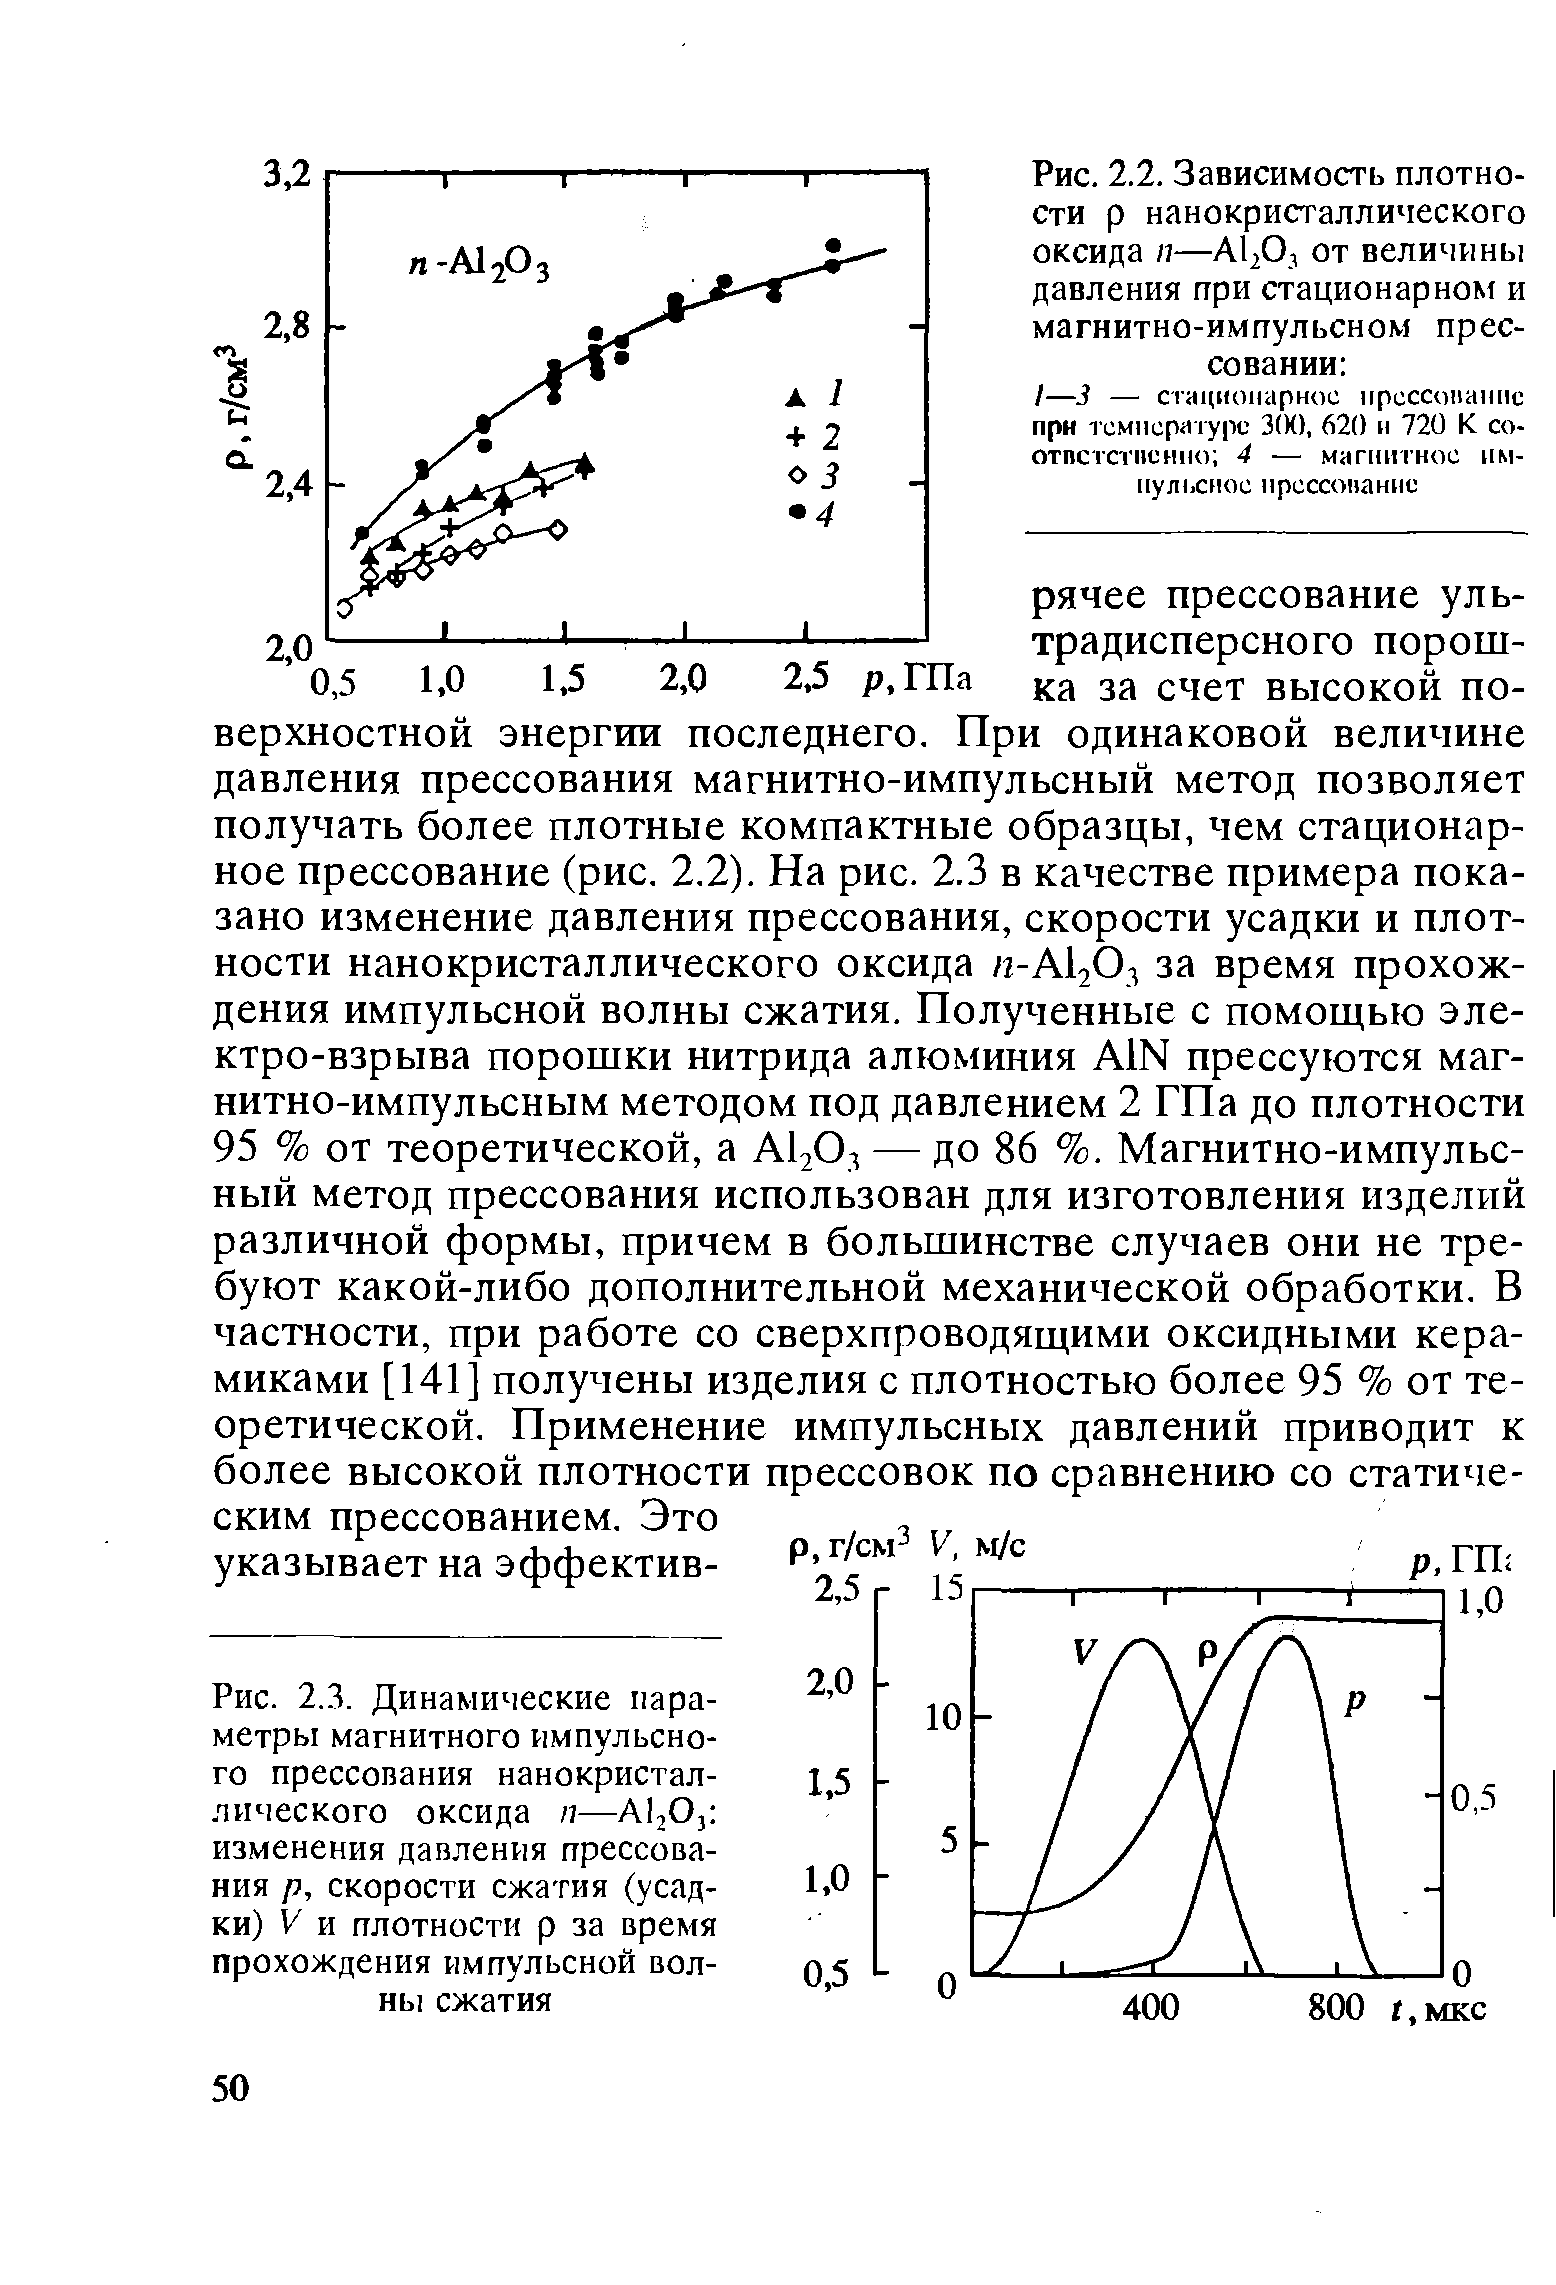 Рис. 2.3. Динамические параметры магнитного импульсного прессования нанокристаллического оксида п—AljOj изменения <a href="/info/409910">давления прессования</a> р, <a href="/info/44595">скорости сжатия</a> (усадки) V и плотности р за время прохождения импульсной волны сжатия
